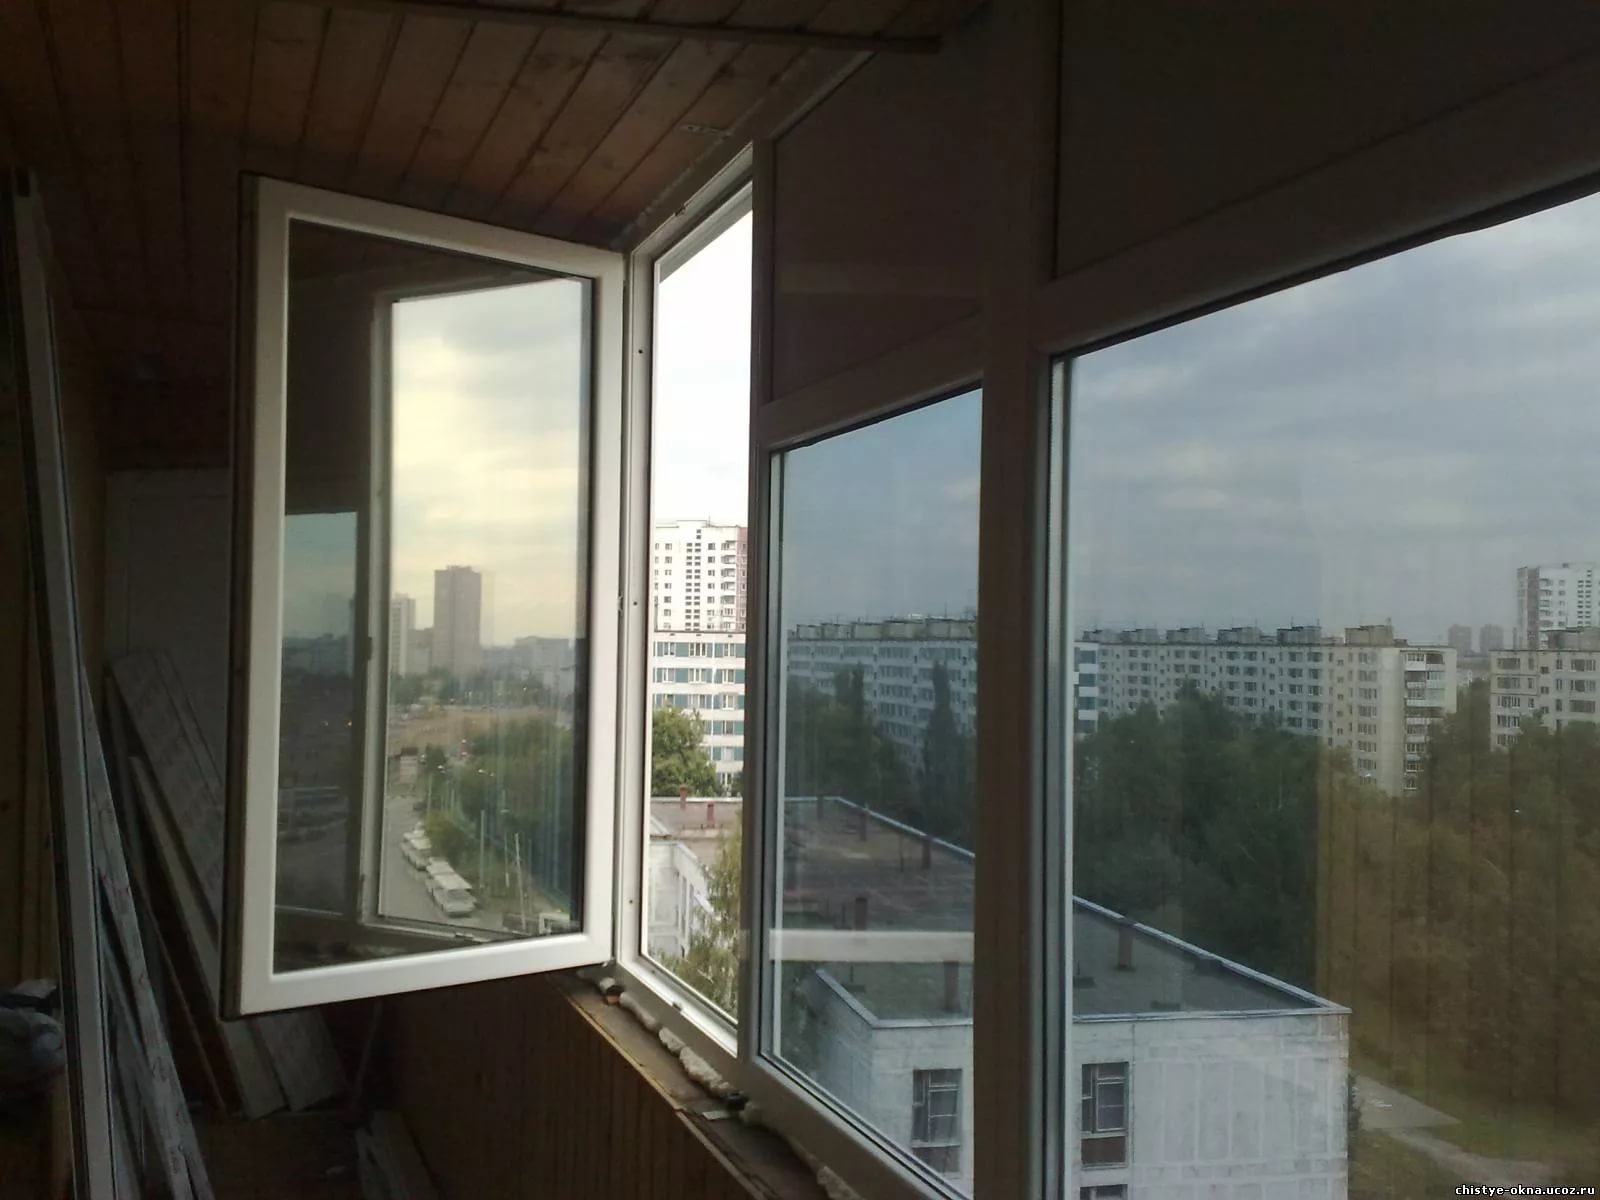 Пленка на окна балкона. Тонированные окна на балконе. Зеркальная тонировка балкона. Тонировочная пленка для балкона. Затемненные стеклопакеты на балкон.